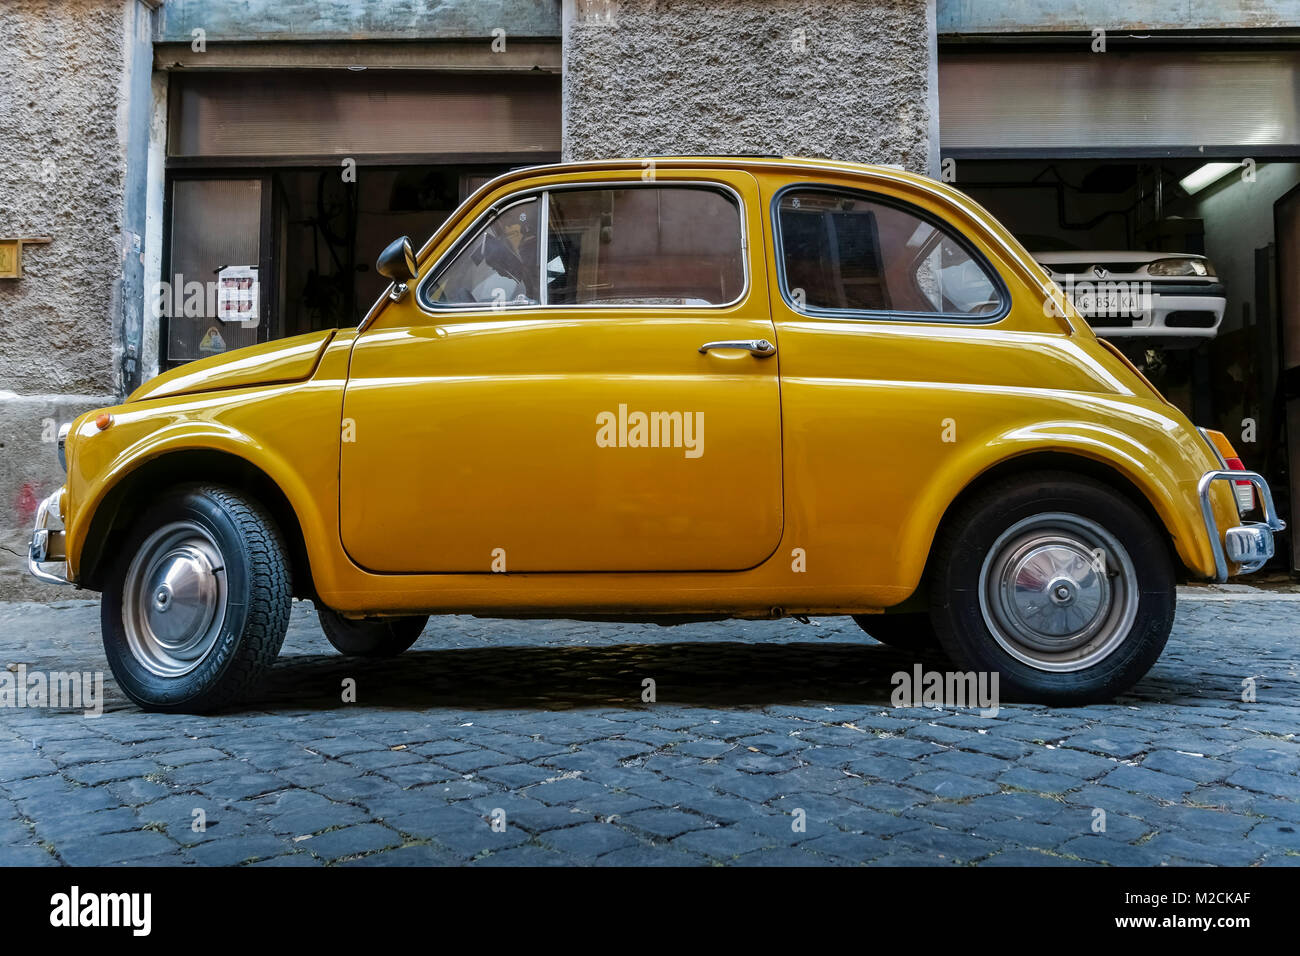 Fiat 500 hergestellt im Jahr 1970. Alter Stil, klassisch, vintage, Retro-Auto. Gelbe Farbe. Geparkt vor einer Autowerkstatt in Rom, Italien, EU. Seitenansicht. Stockfoto